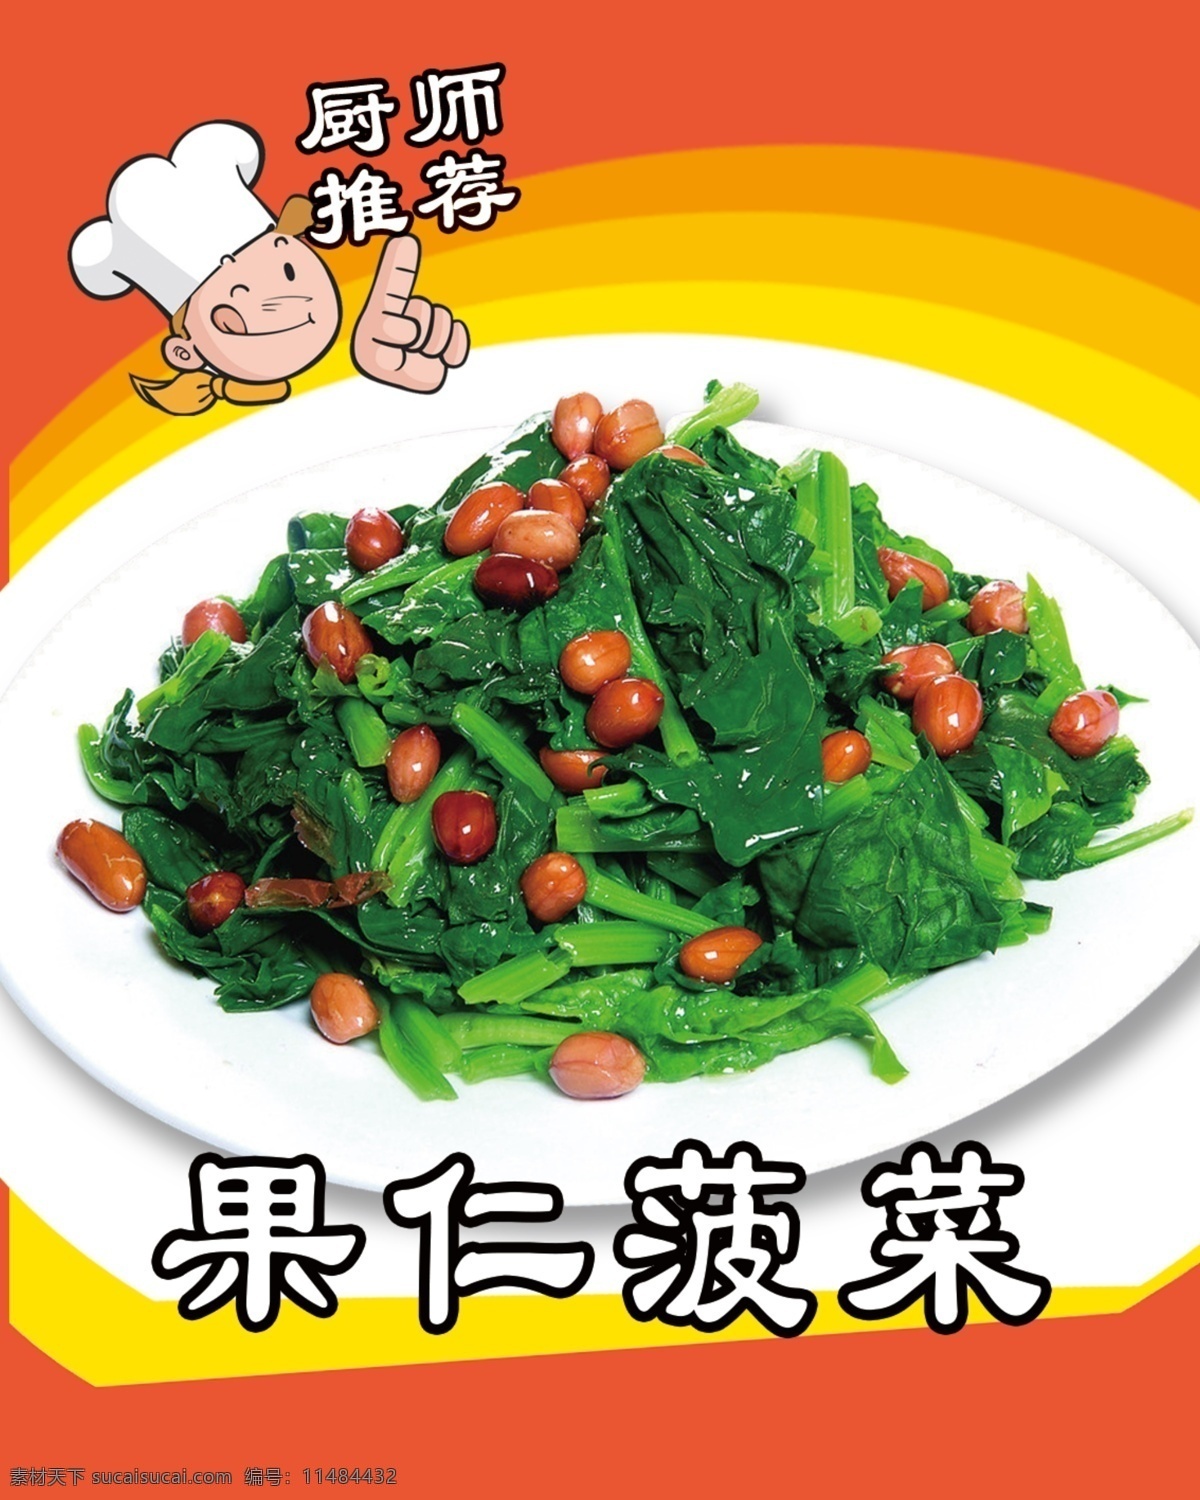 果仁菠菜 菜图 拌菜 凉菜 花生米 菠菜 分层